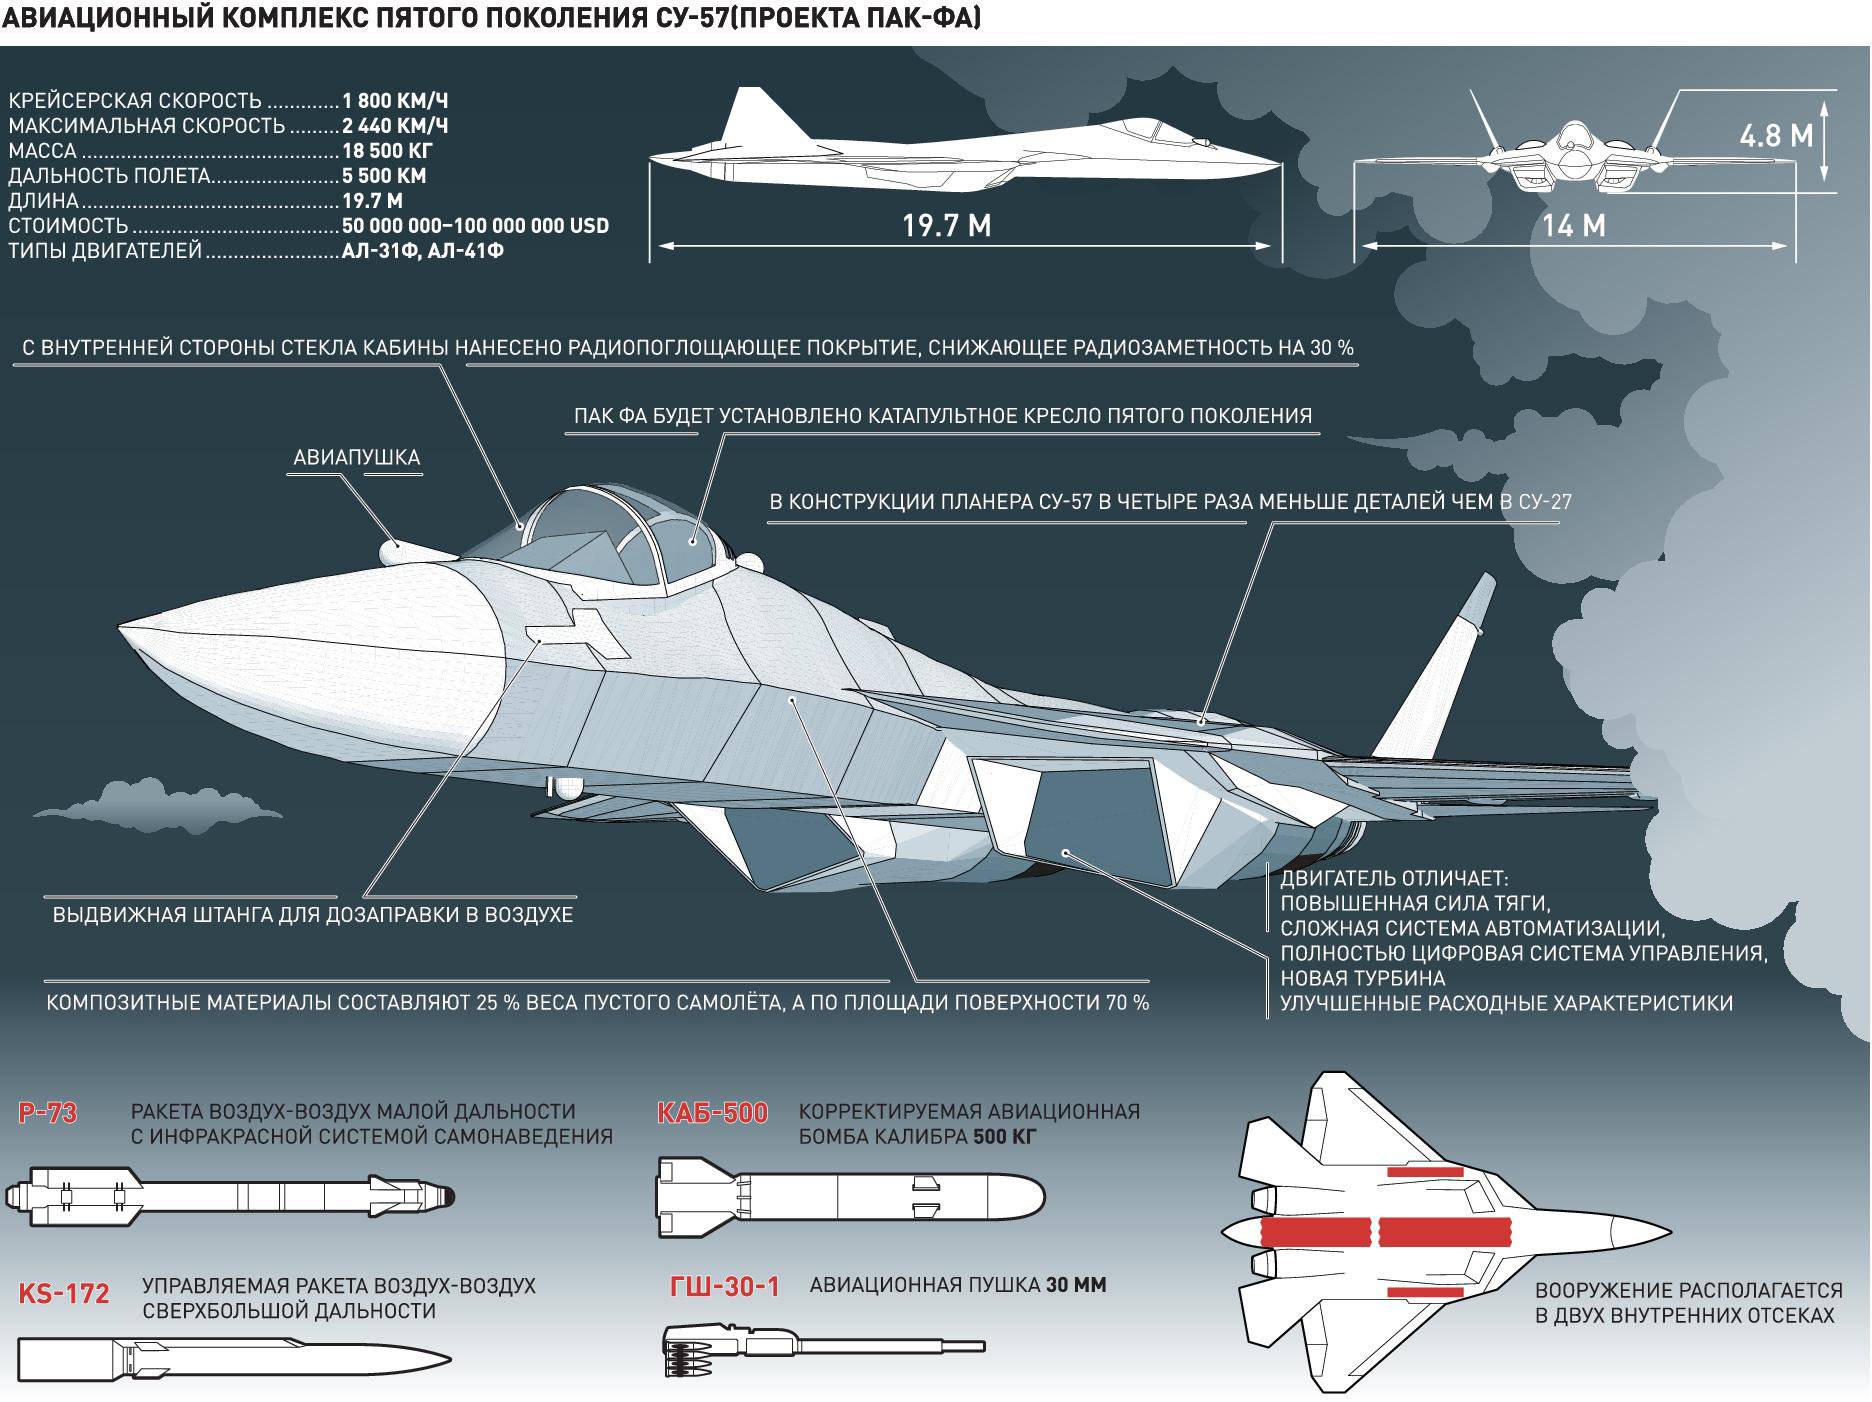 Су-37 «терминатор» — многоцелевой истребитель